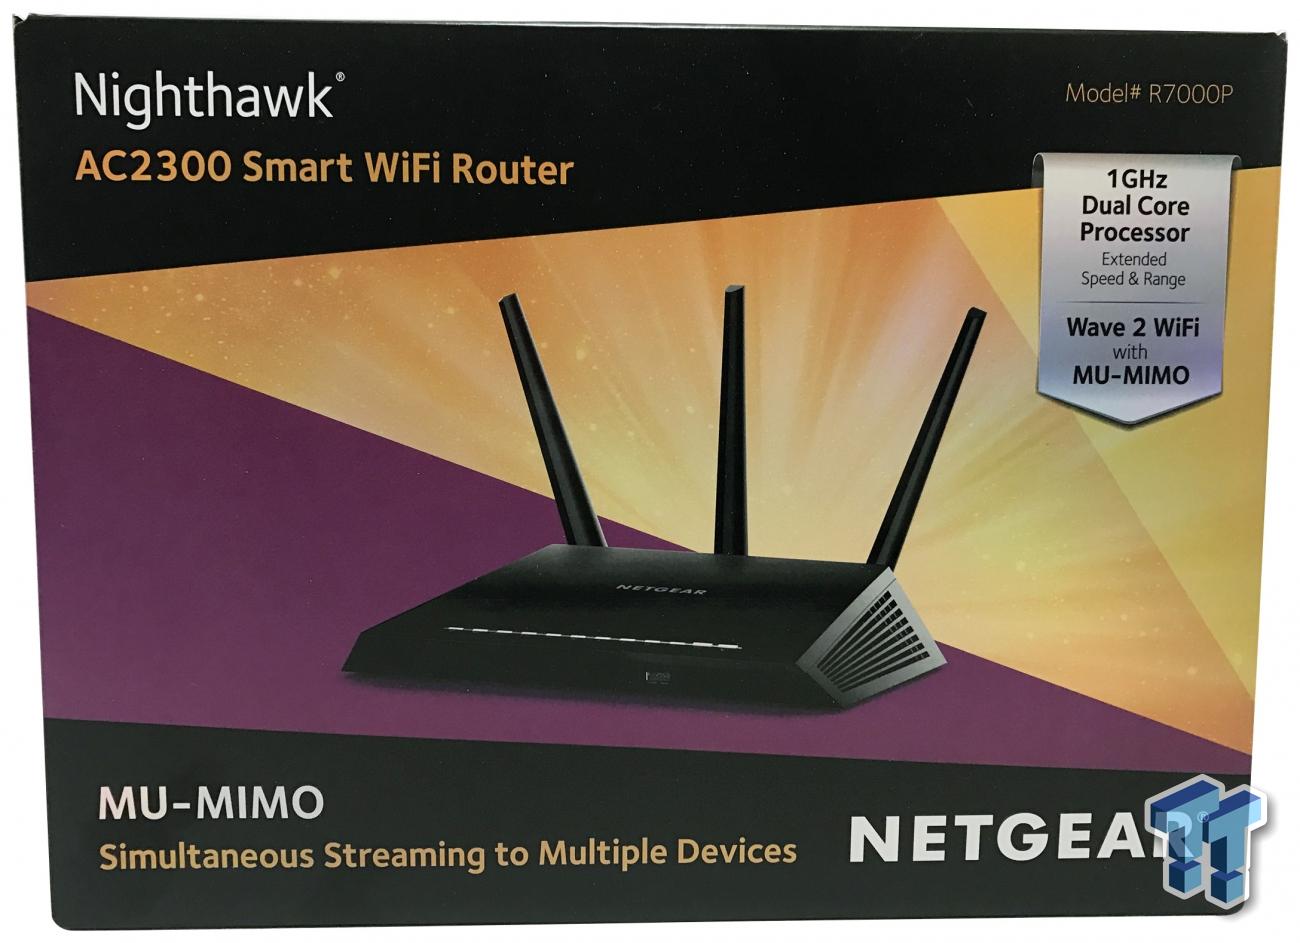 NETGEAR Nighthawk R7000P AC2300 Wireless Router Review | TweakTown